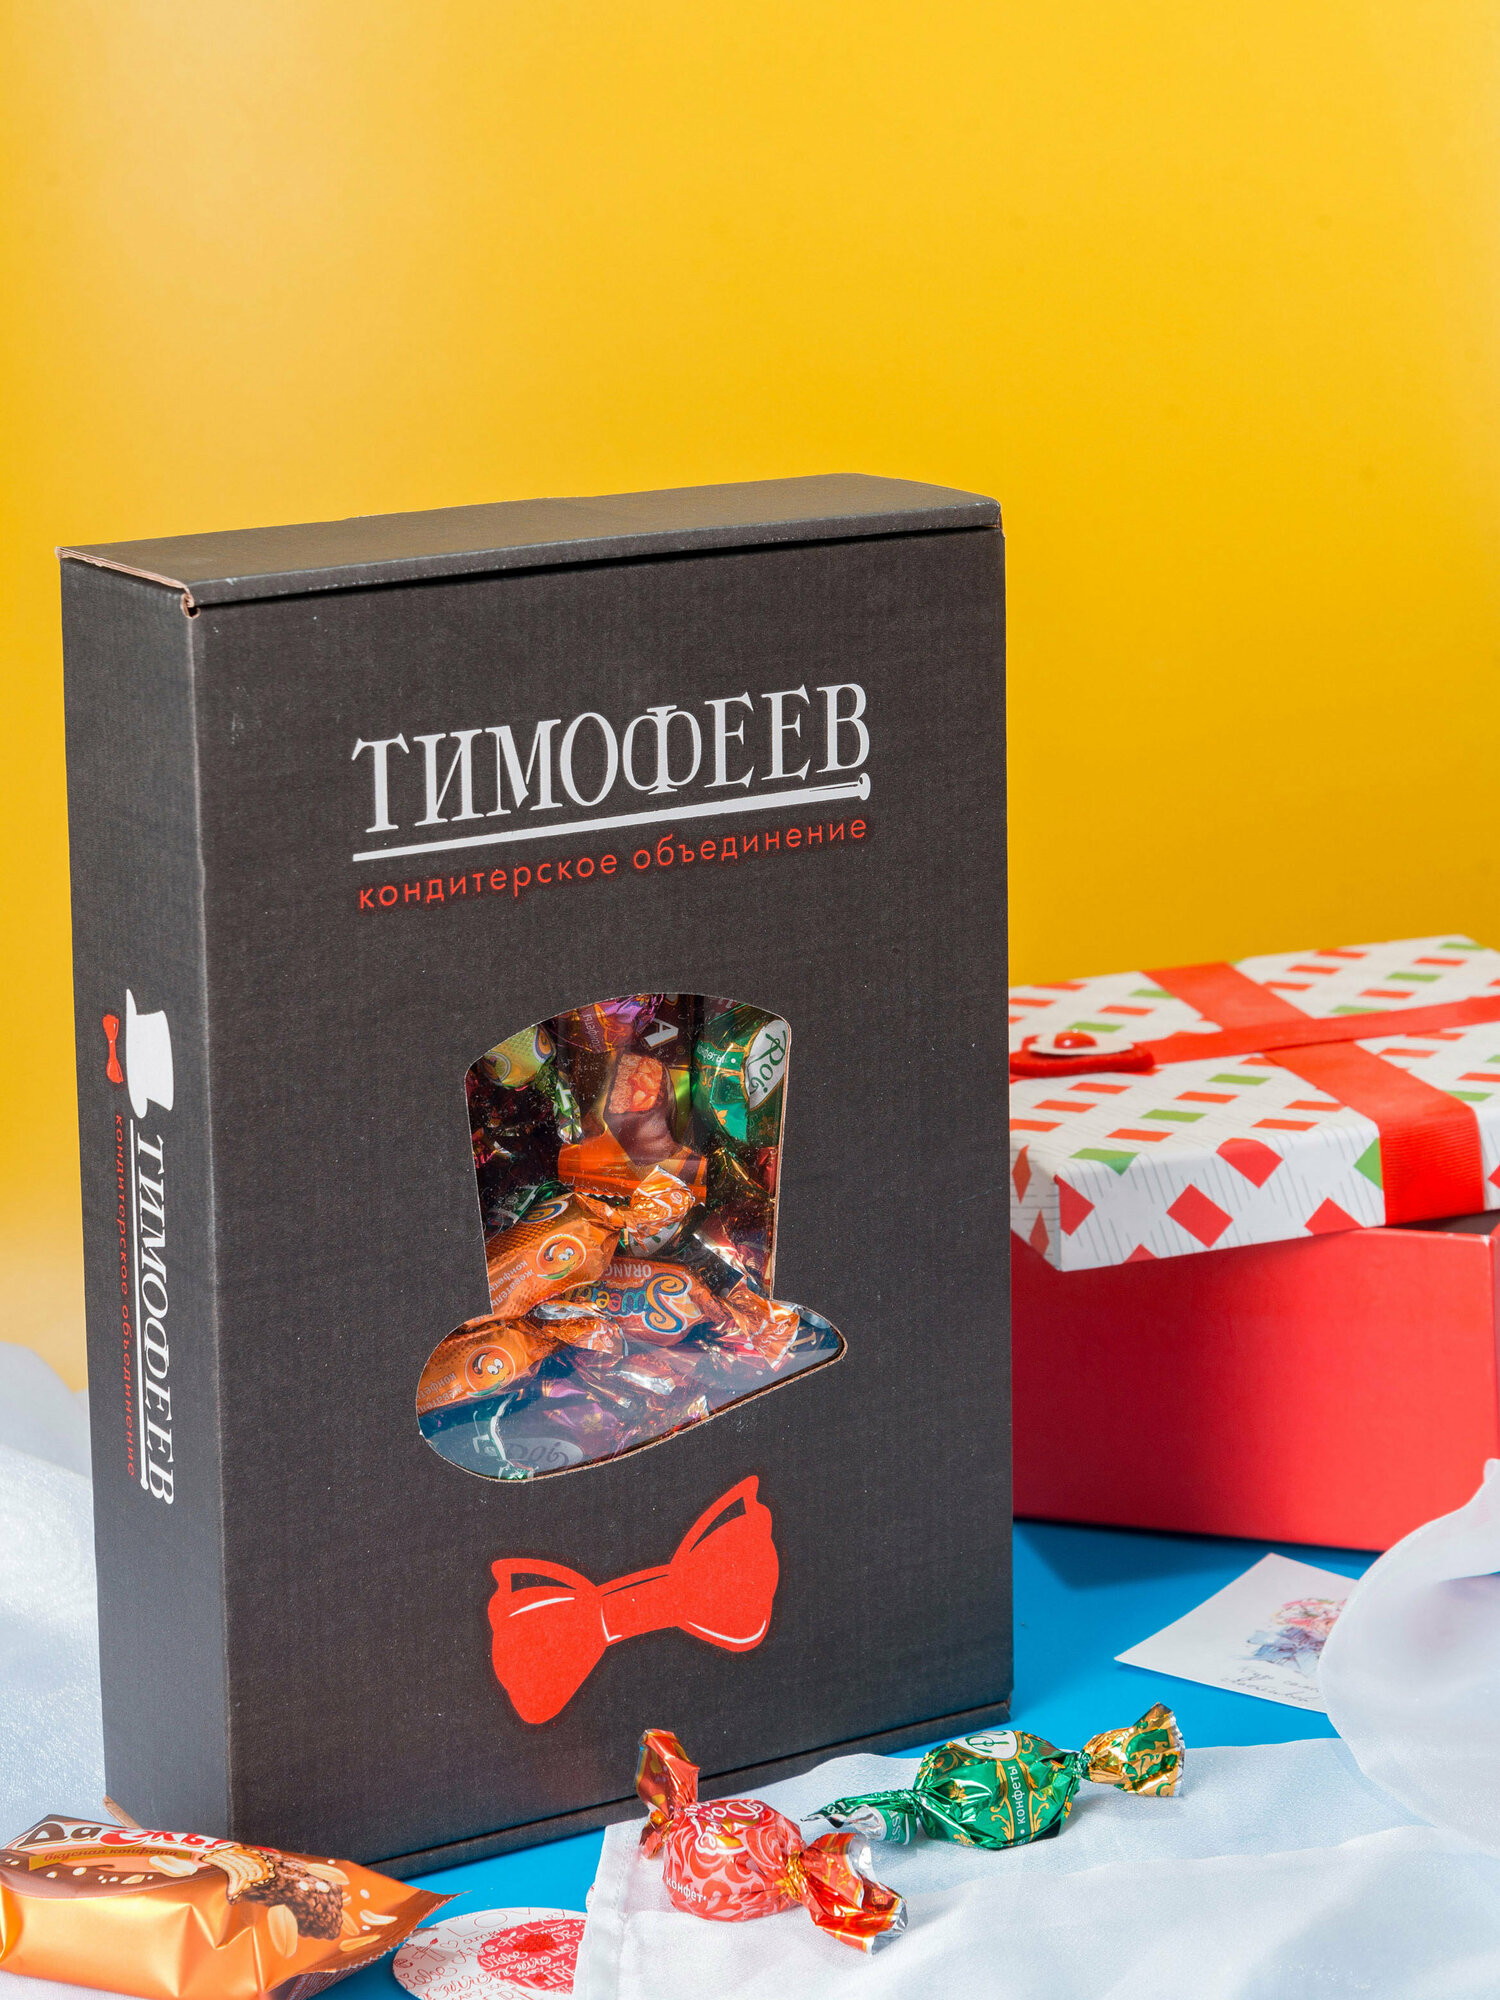 Шоколадные конфеты в подарок из 10 видов "Премиальный", Тимофеев ко, 1 кг